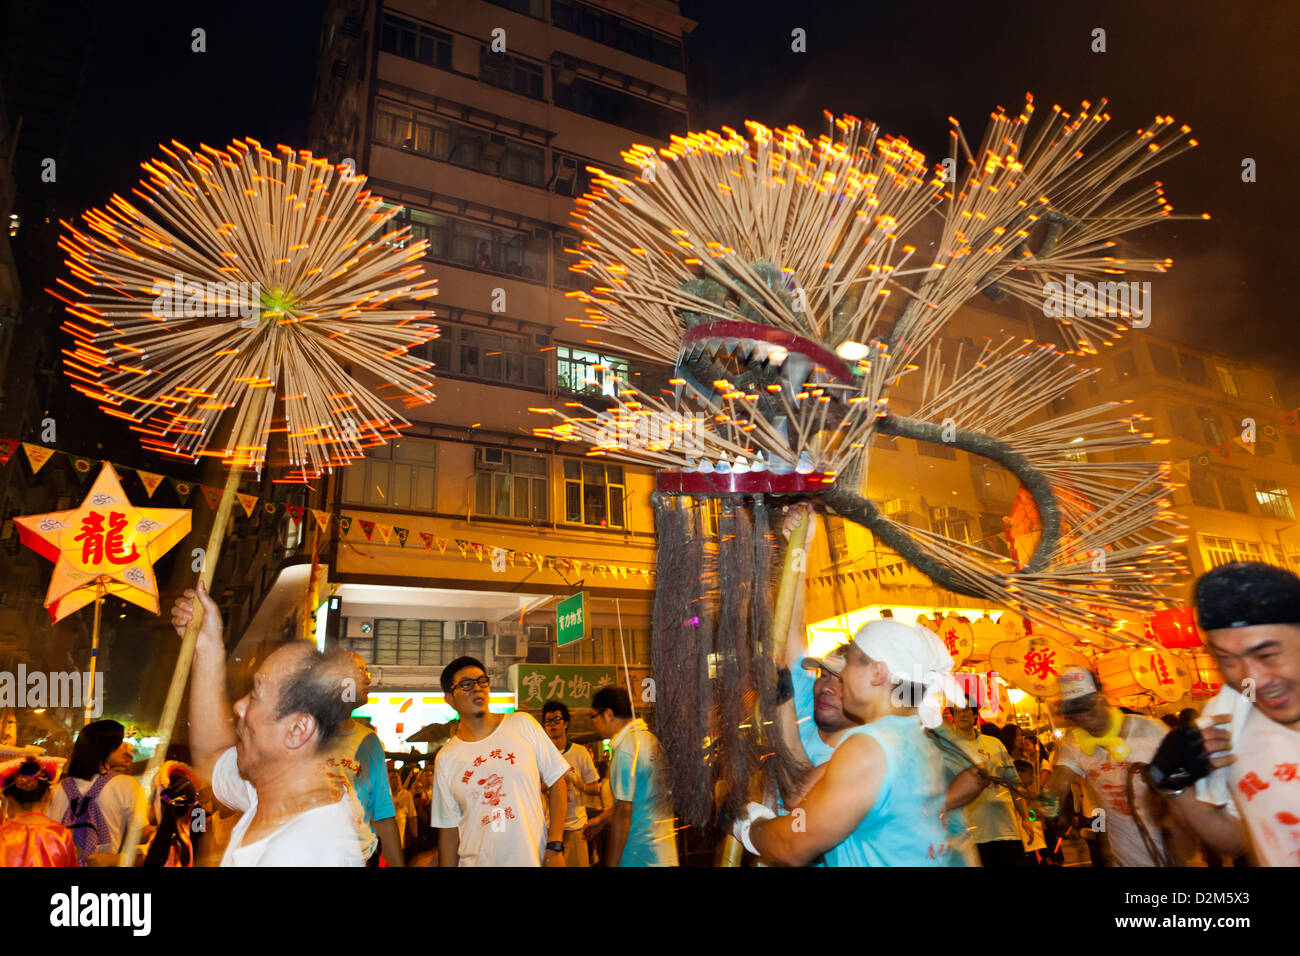 Tai Hang Fire Dragon Dance in Hong Kong, traditional culture. Stock Photo